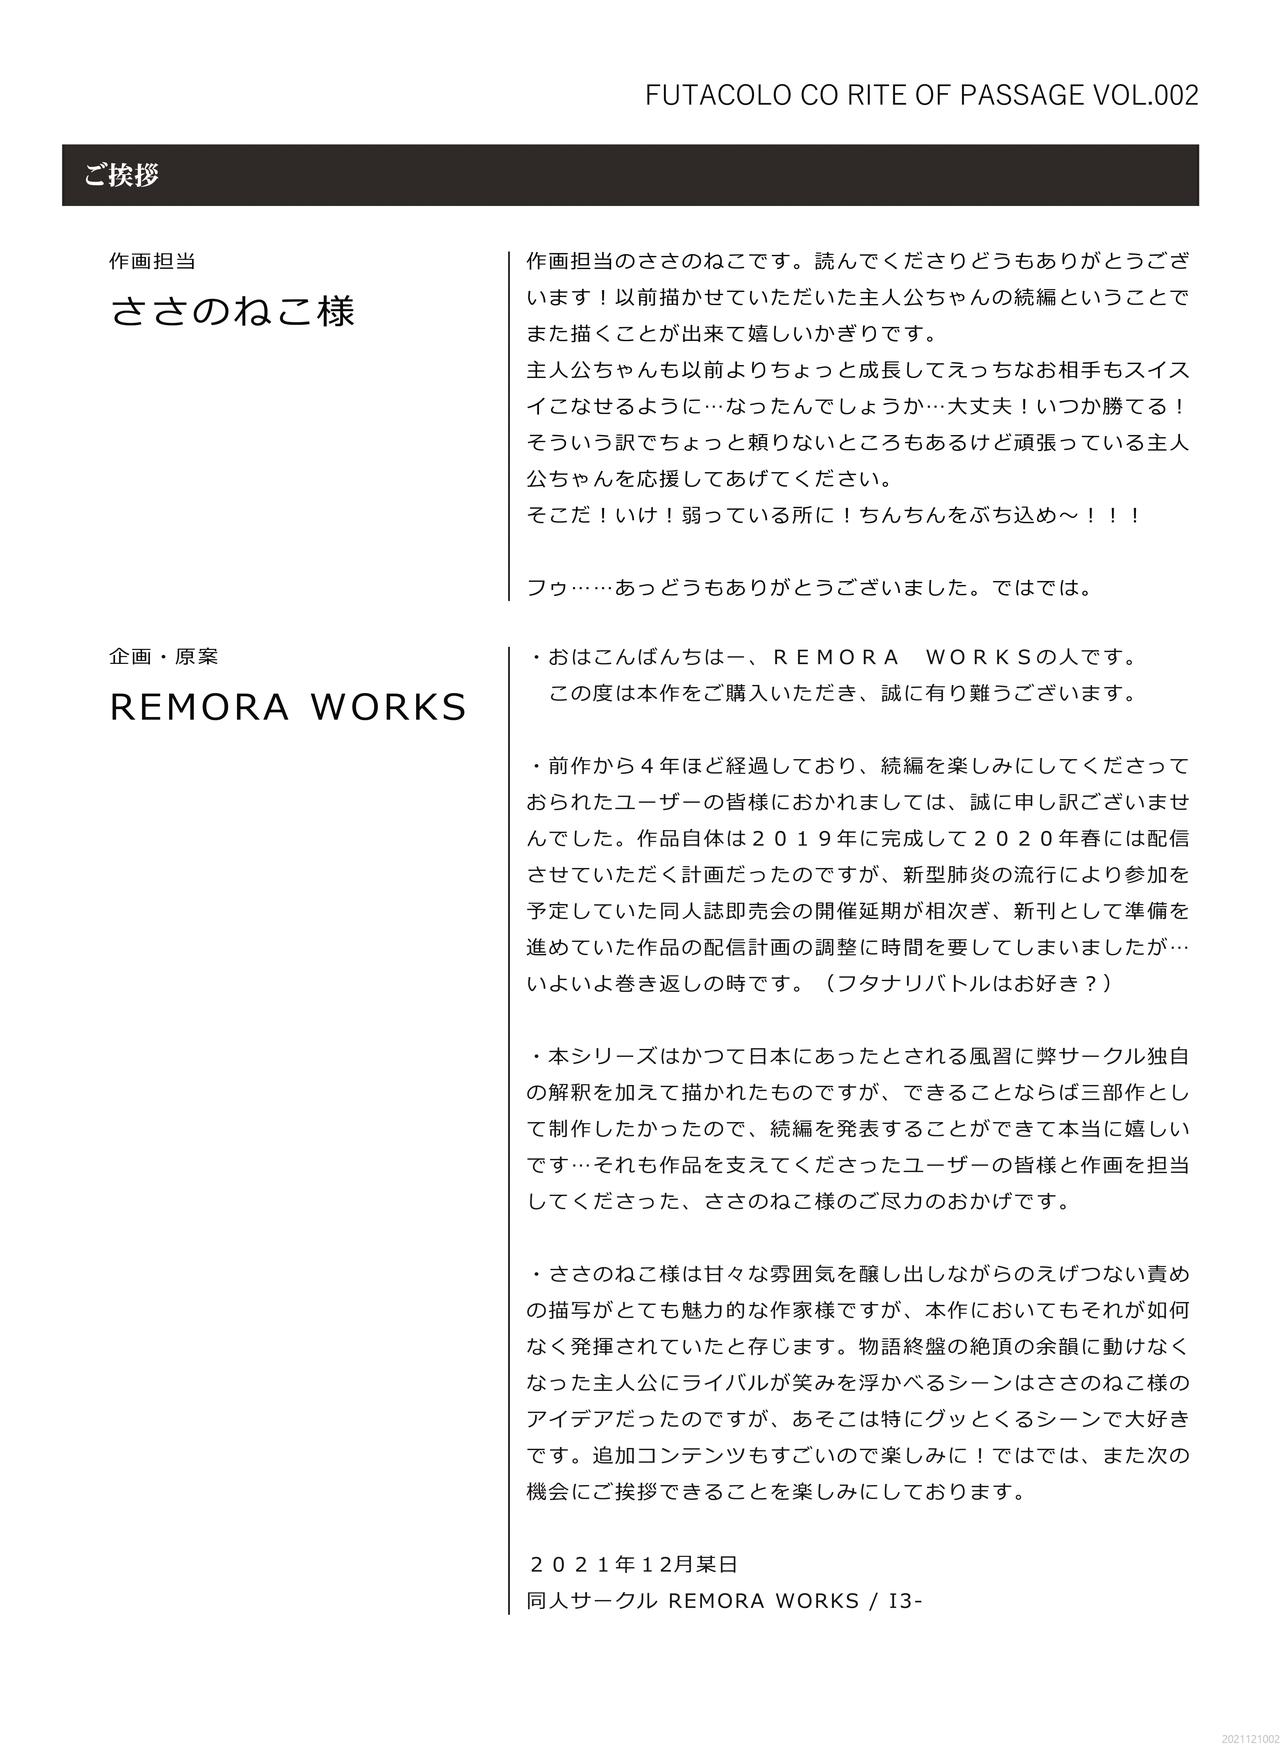 [REMORA WORKS (Sasano Neko)] FUTACOLO CO -RITE OF PASSAGE- Vol. 002 24